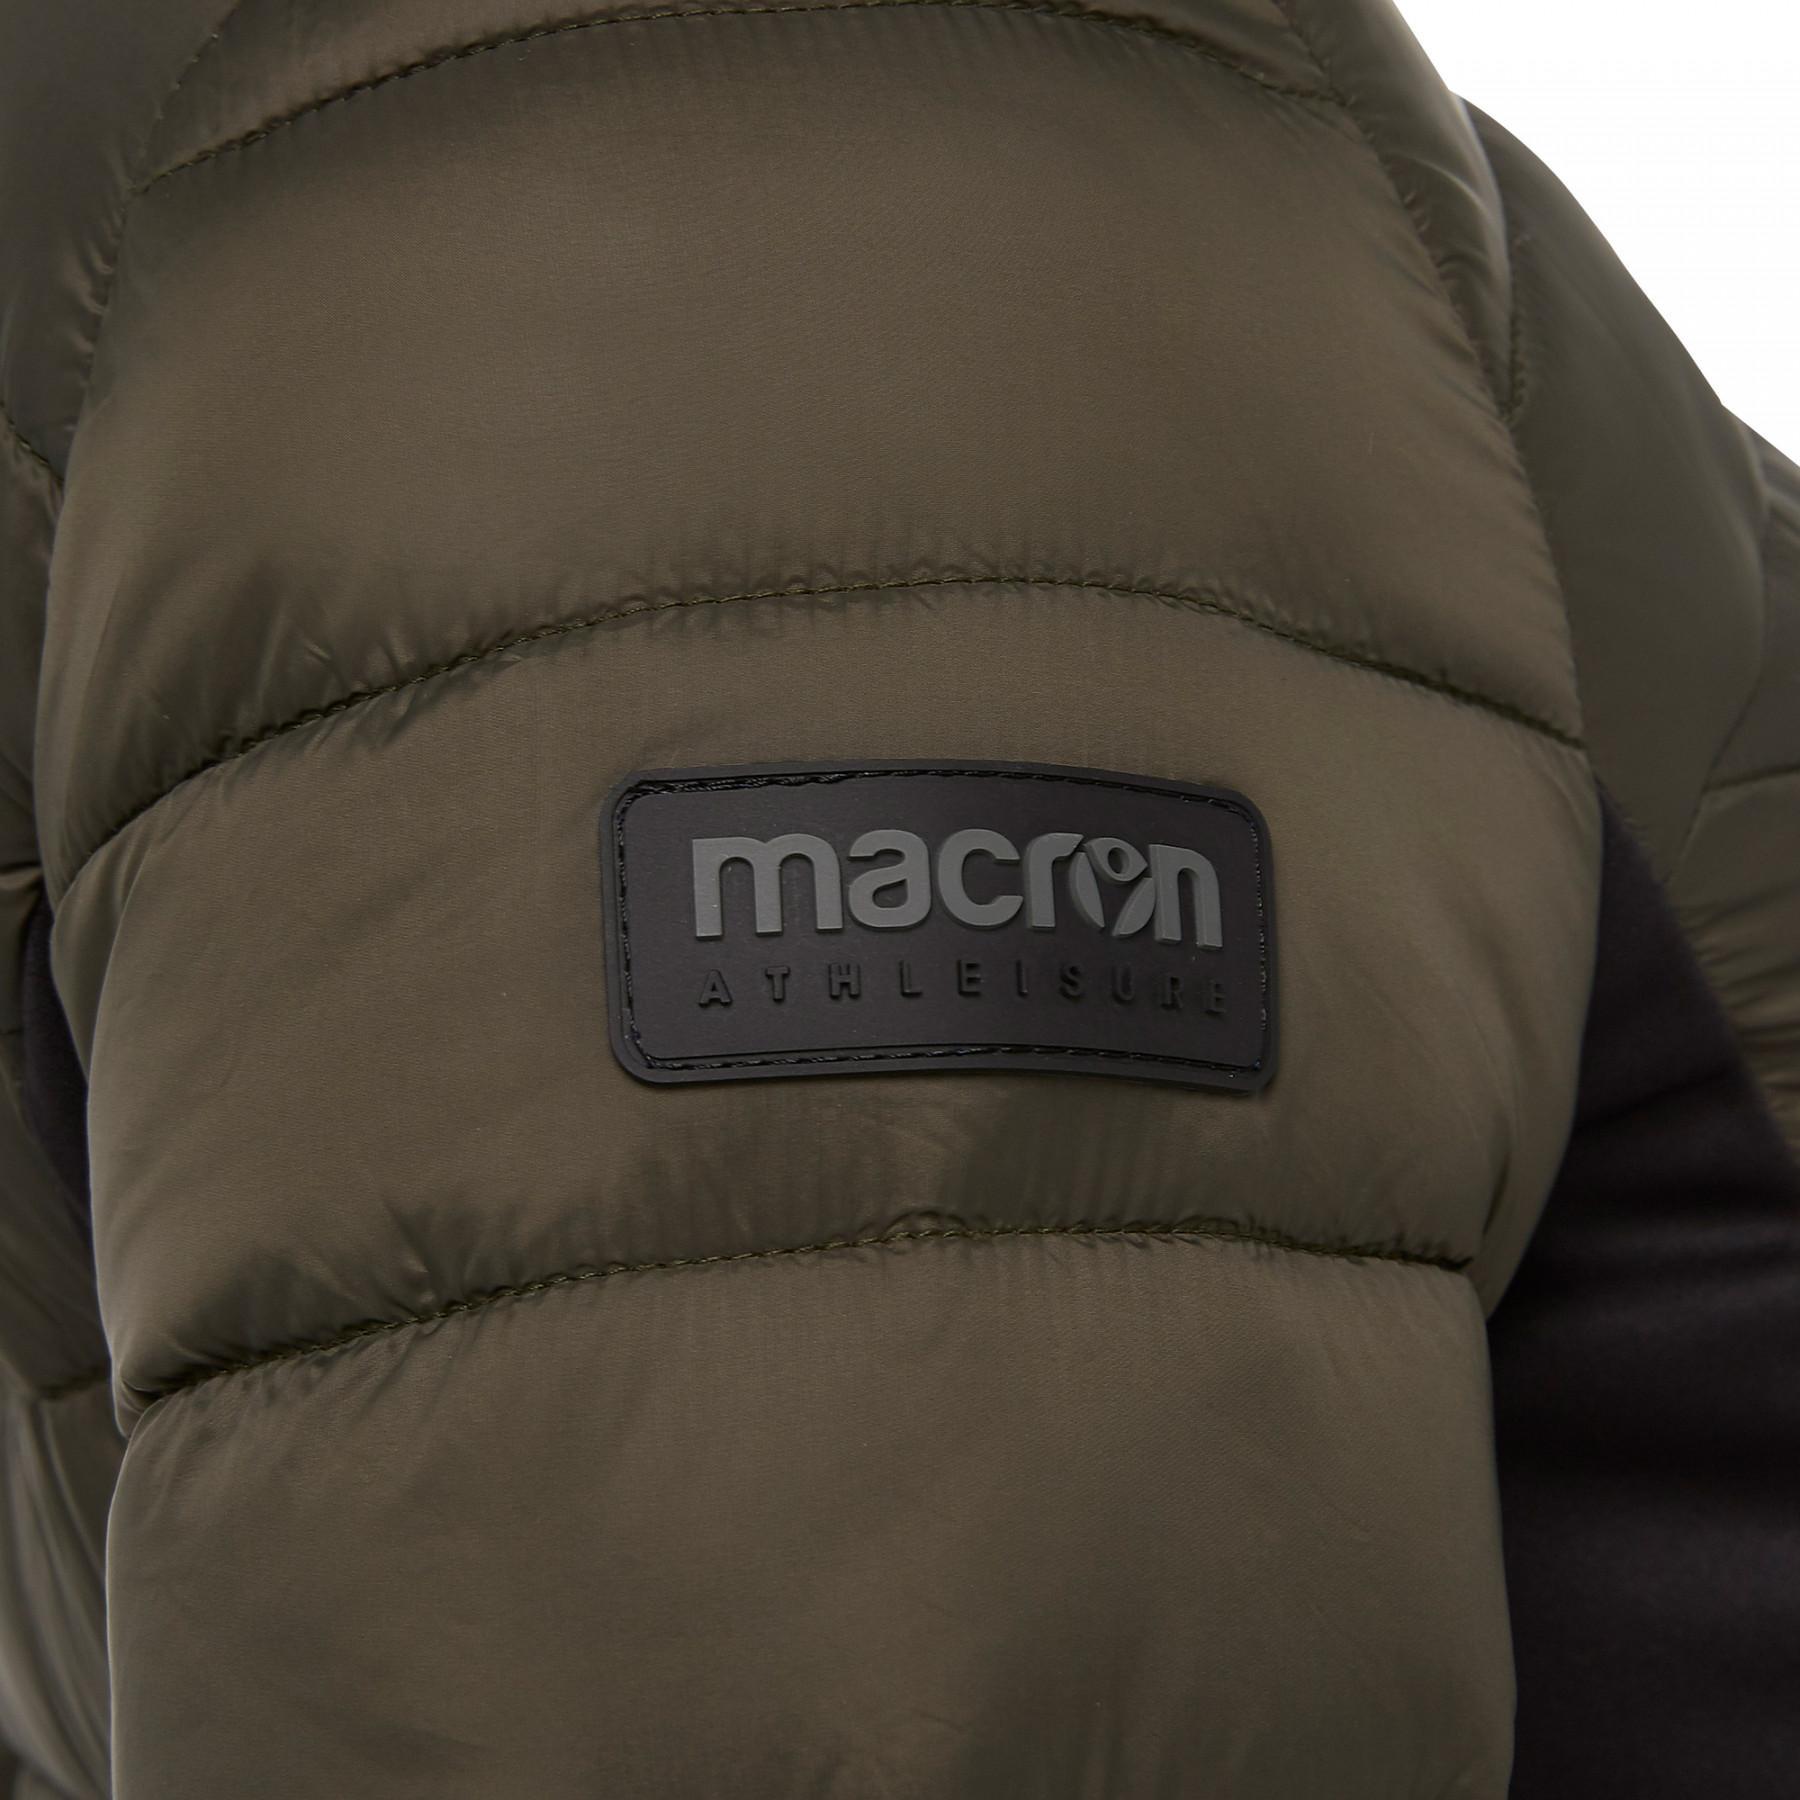 Women's light jacket Macron fbi brussels